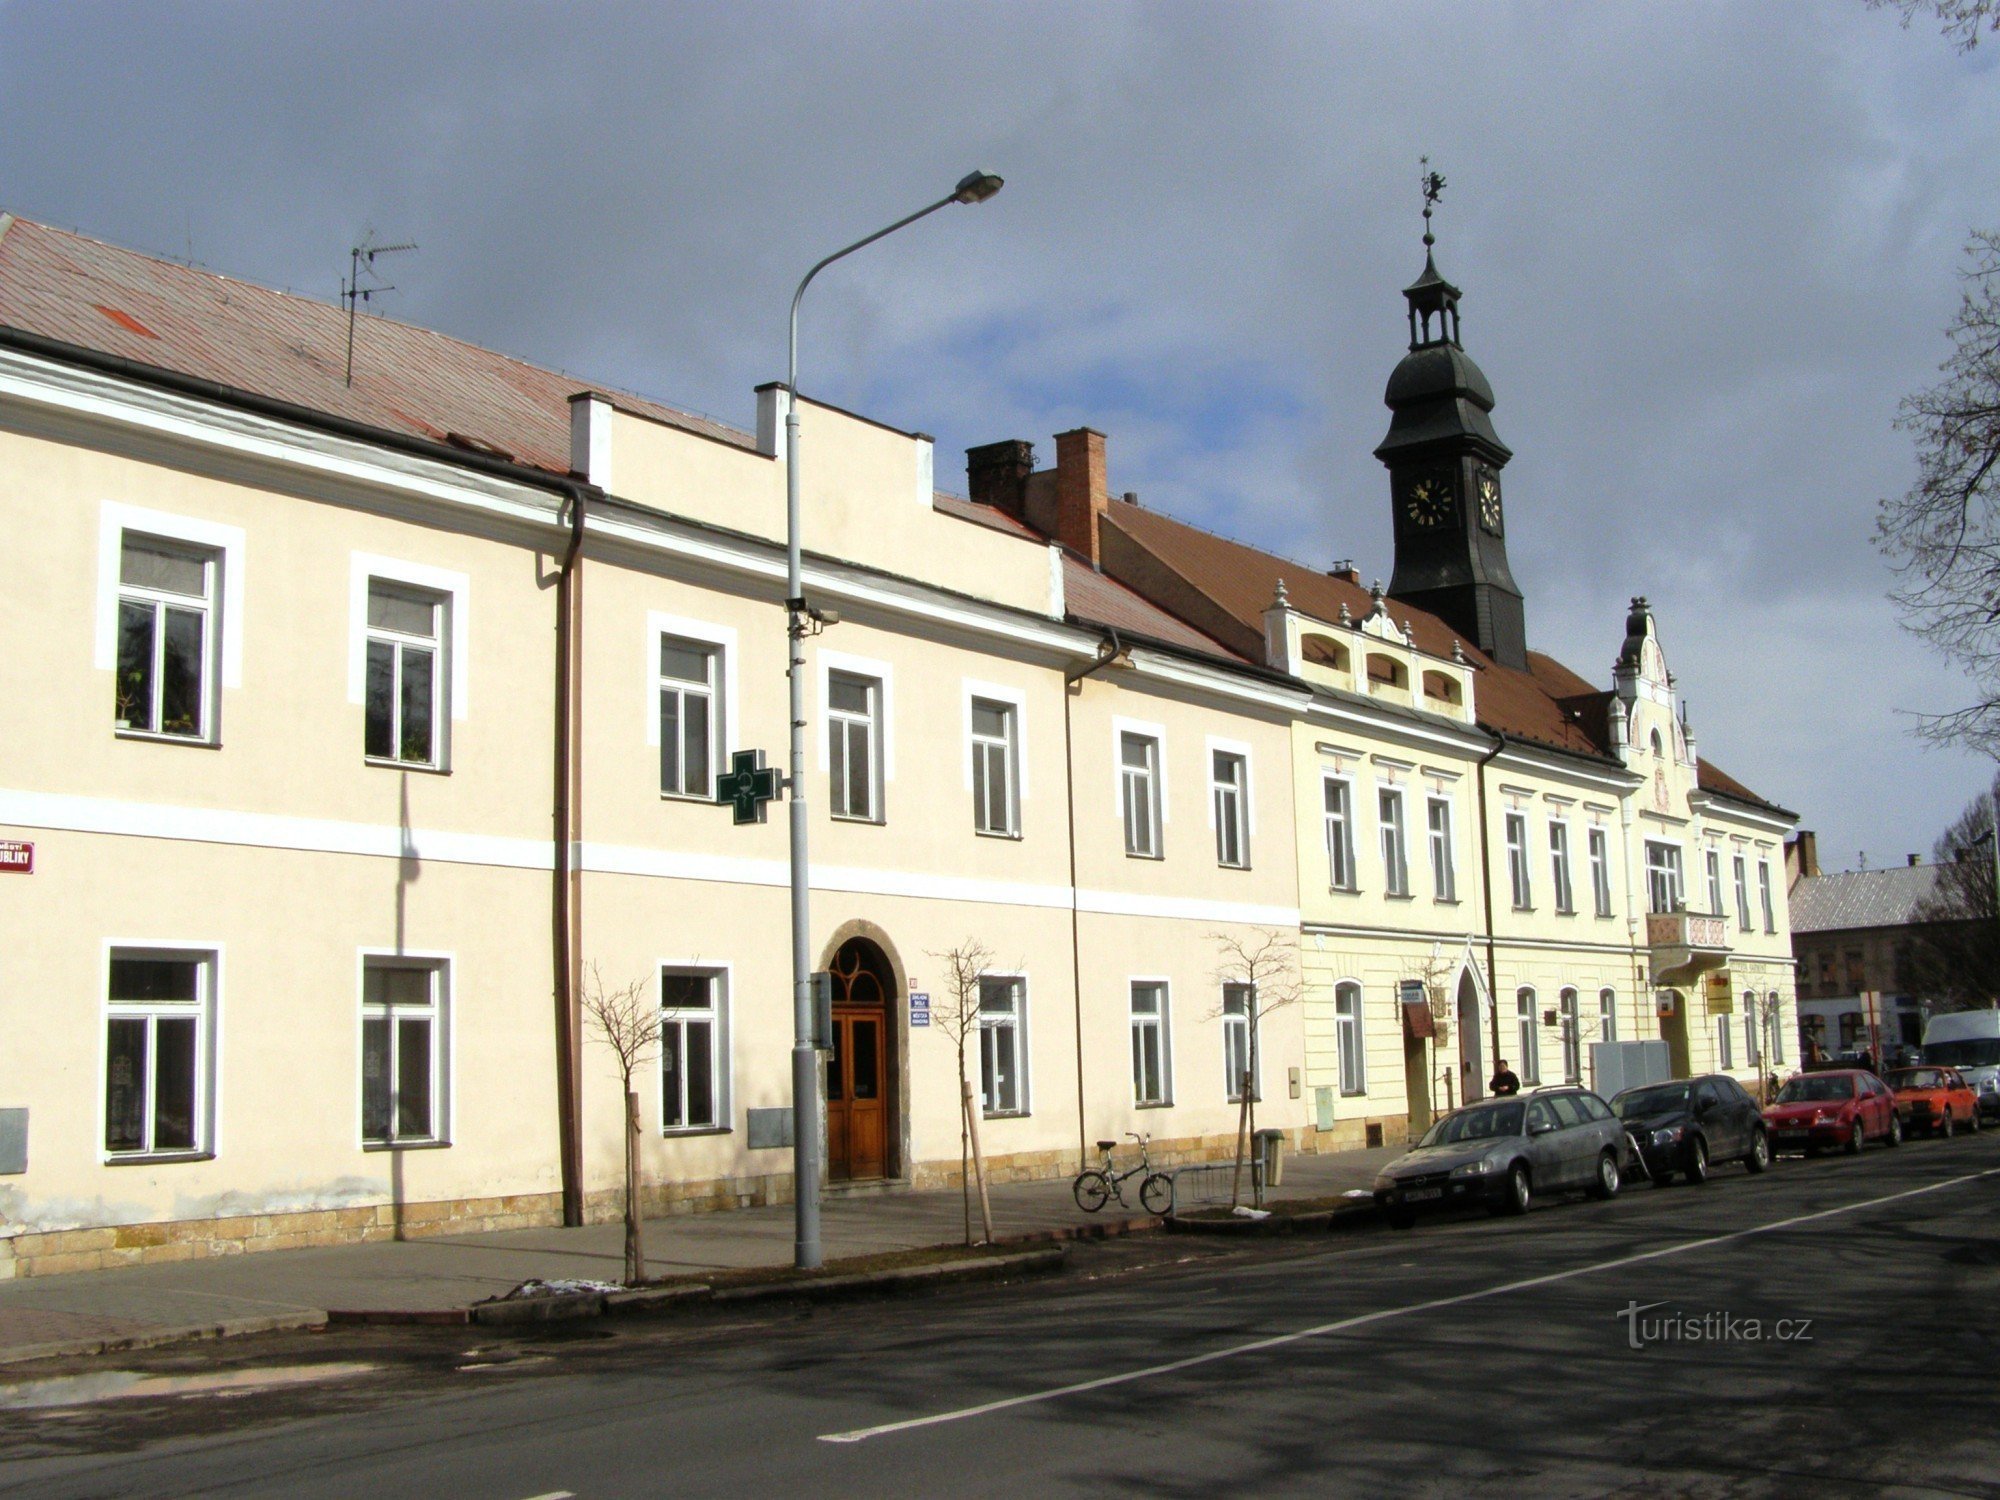 Town of Králové